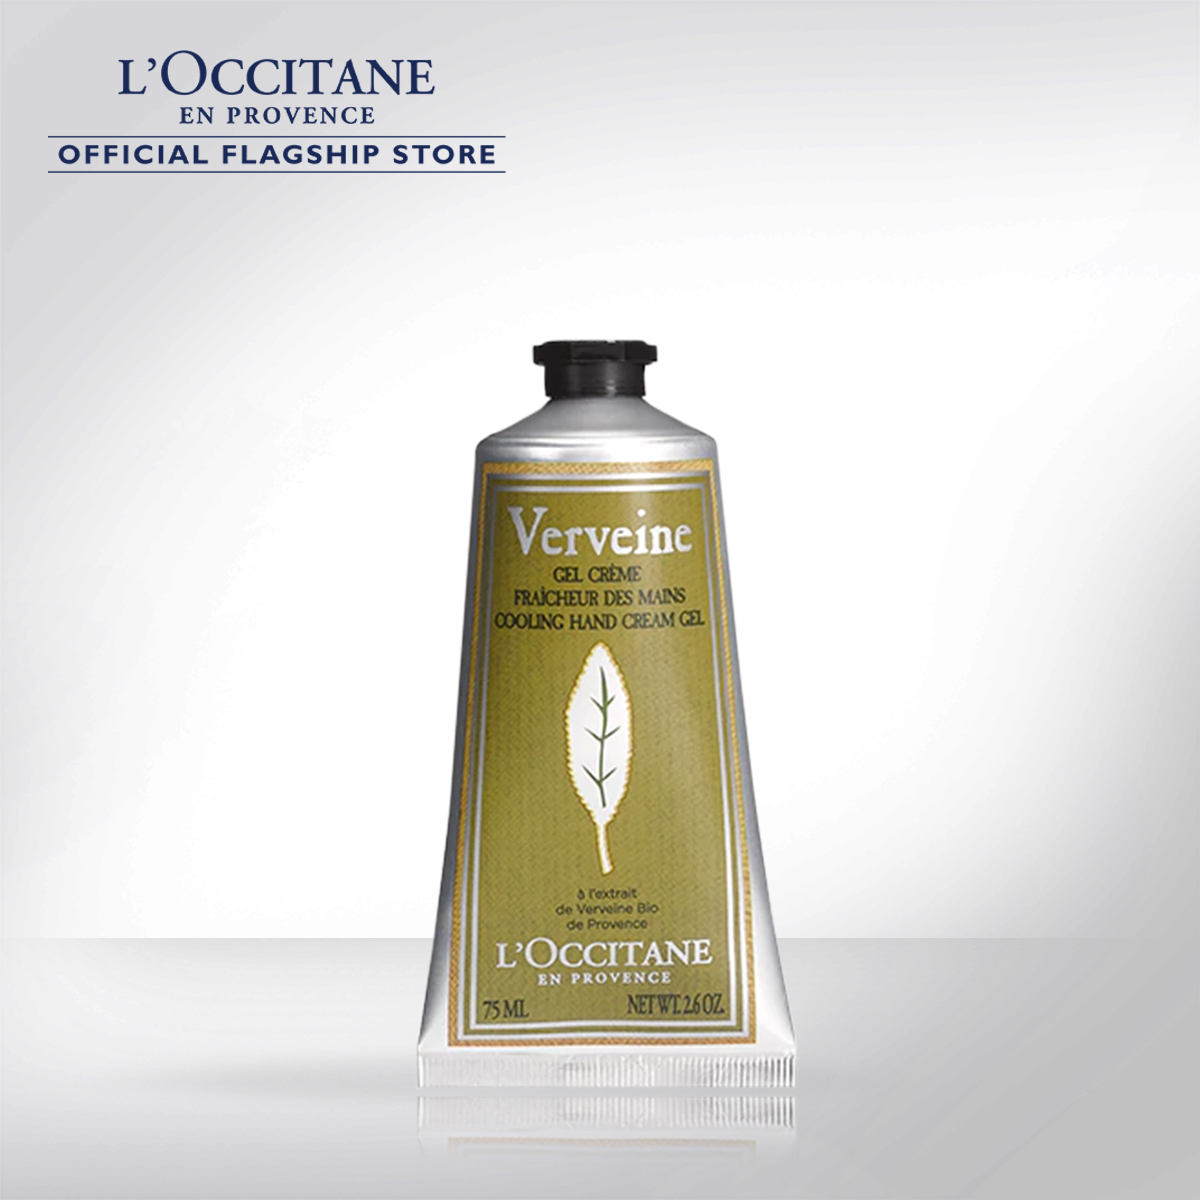 L'Occitane Verbena Hand Cream 75ml ล็อกซิทาน ครีมทามือ เวอร์บีน่า แฮนด์ครีม 75 มล. (ผิวมือ, ทามือ, ผิวนุ่มลื่น, ชุ่มชื้น, สดชื่น)